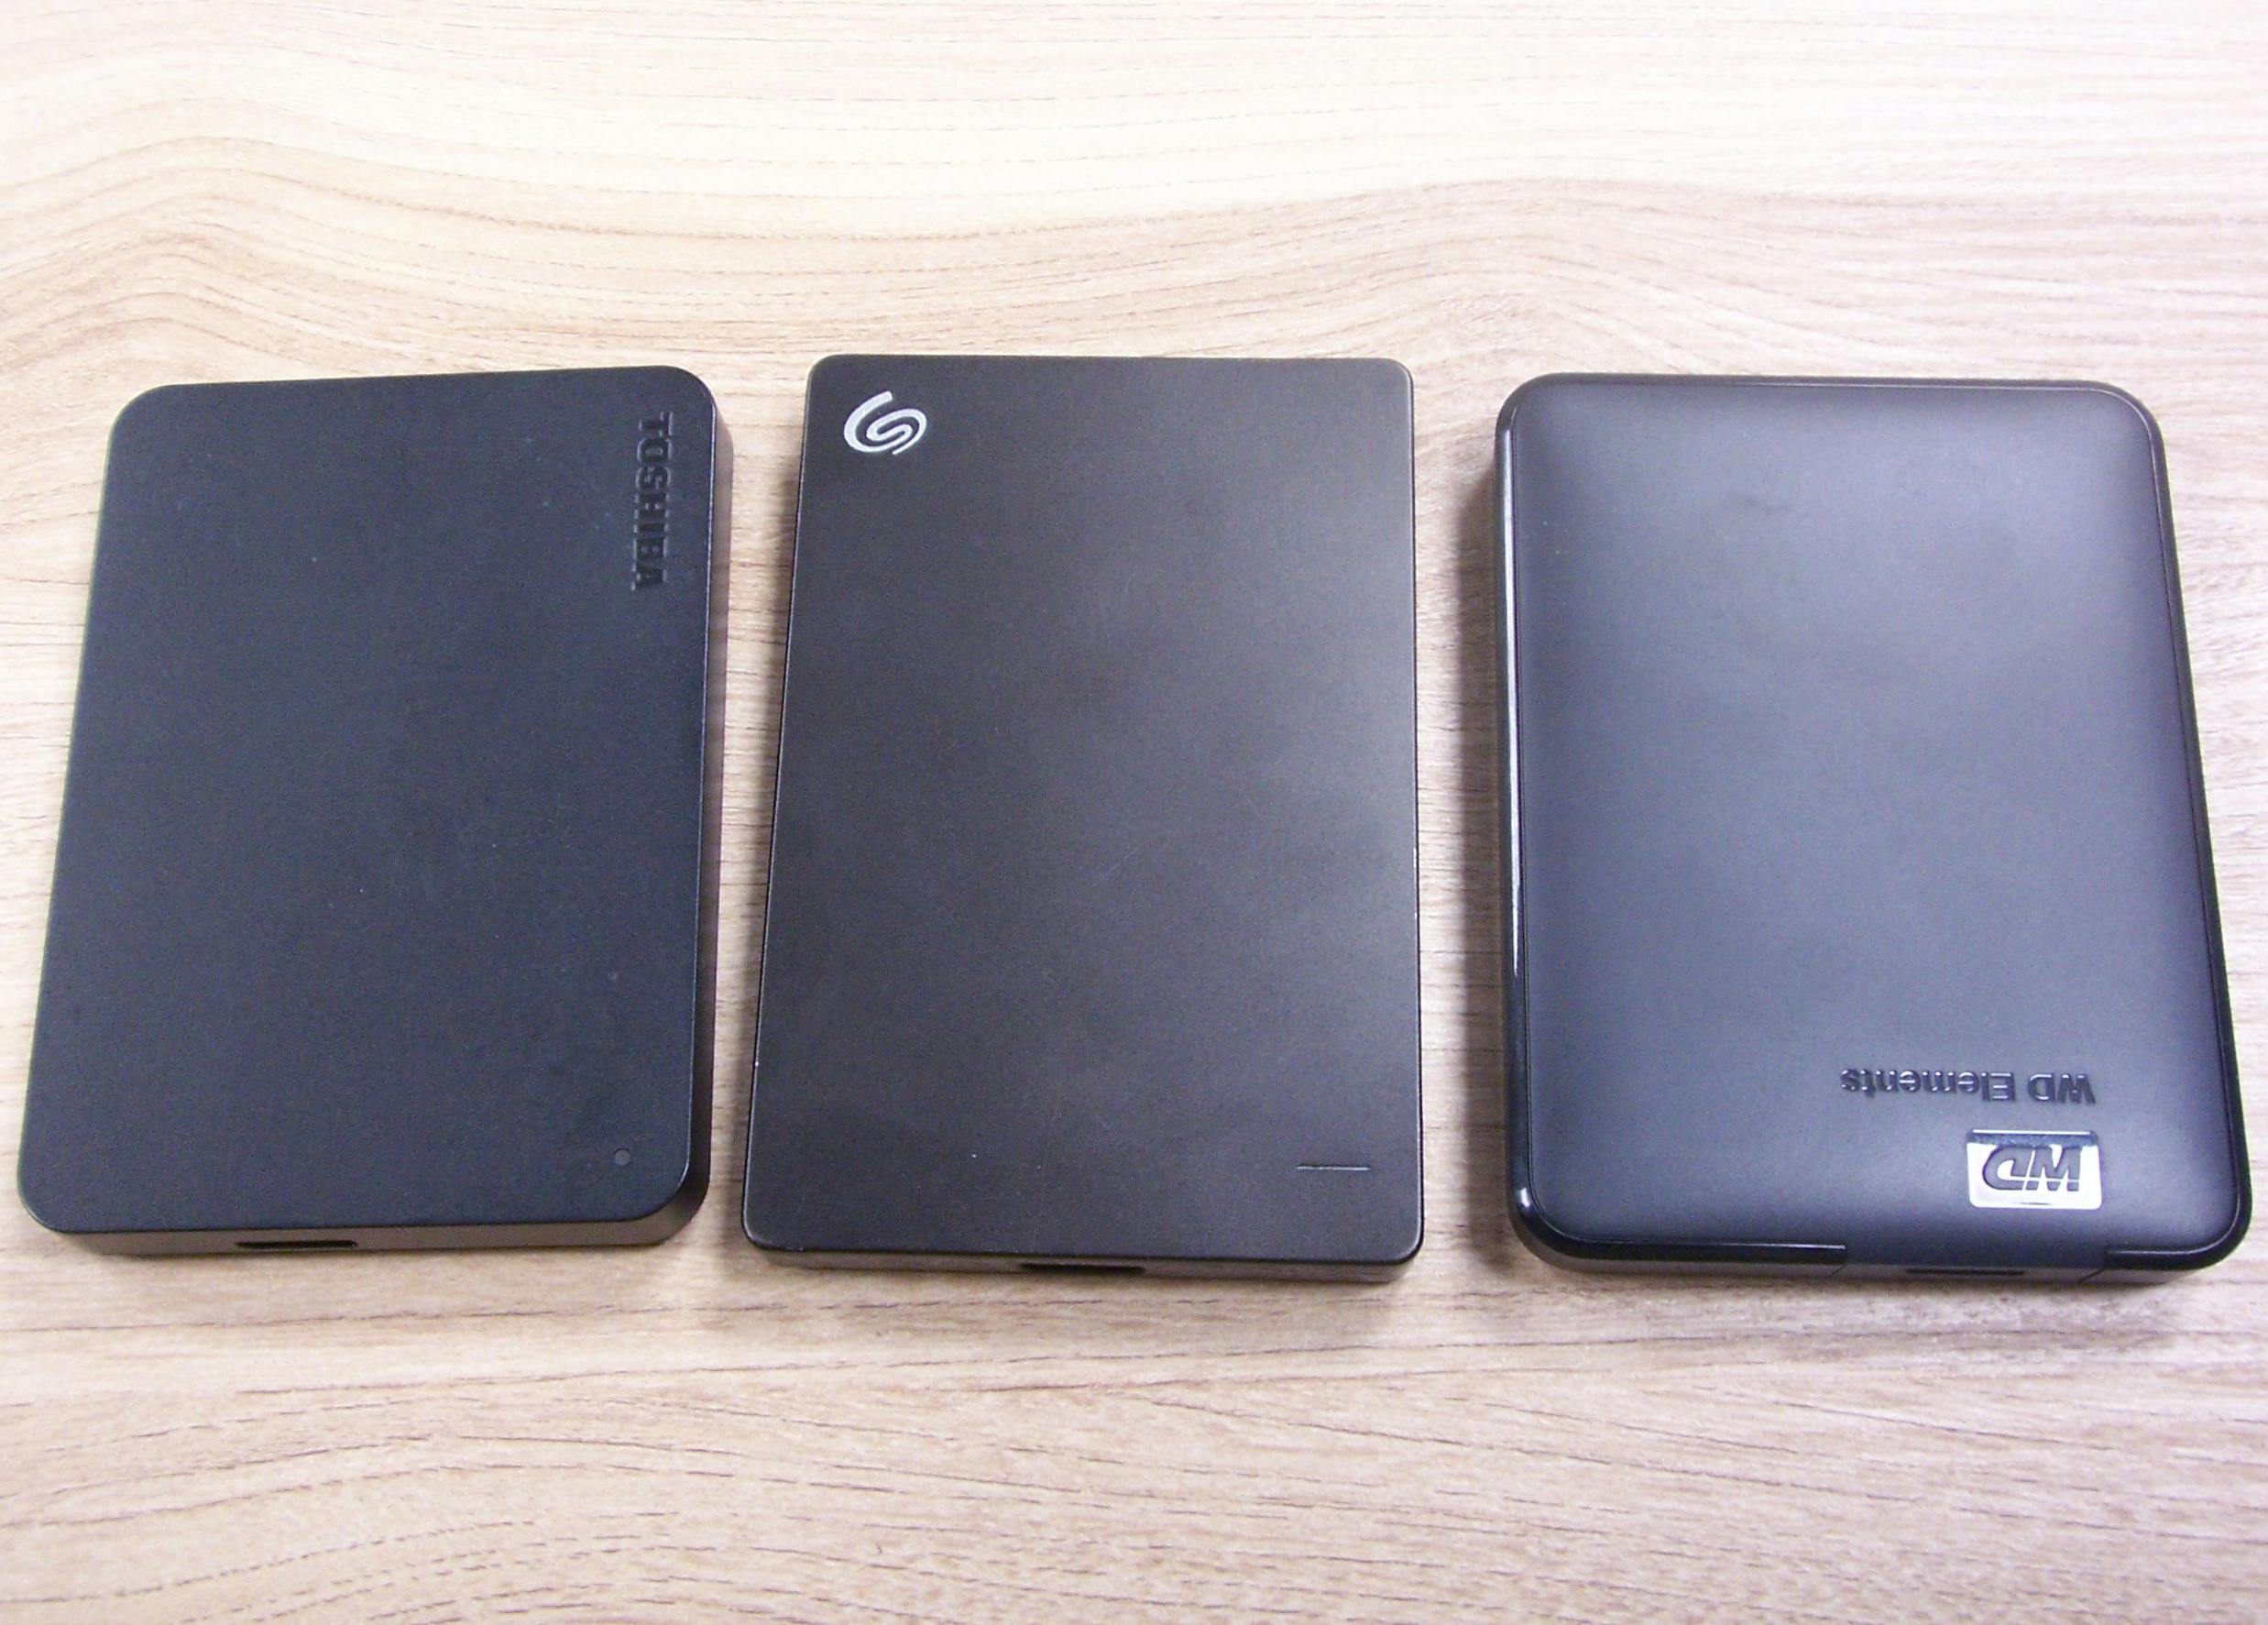 Trzy dyski twarde z interfejsem USB - Toshiba, Seagate, Western Digital, w czarnych obudowach.